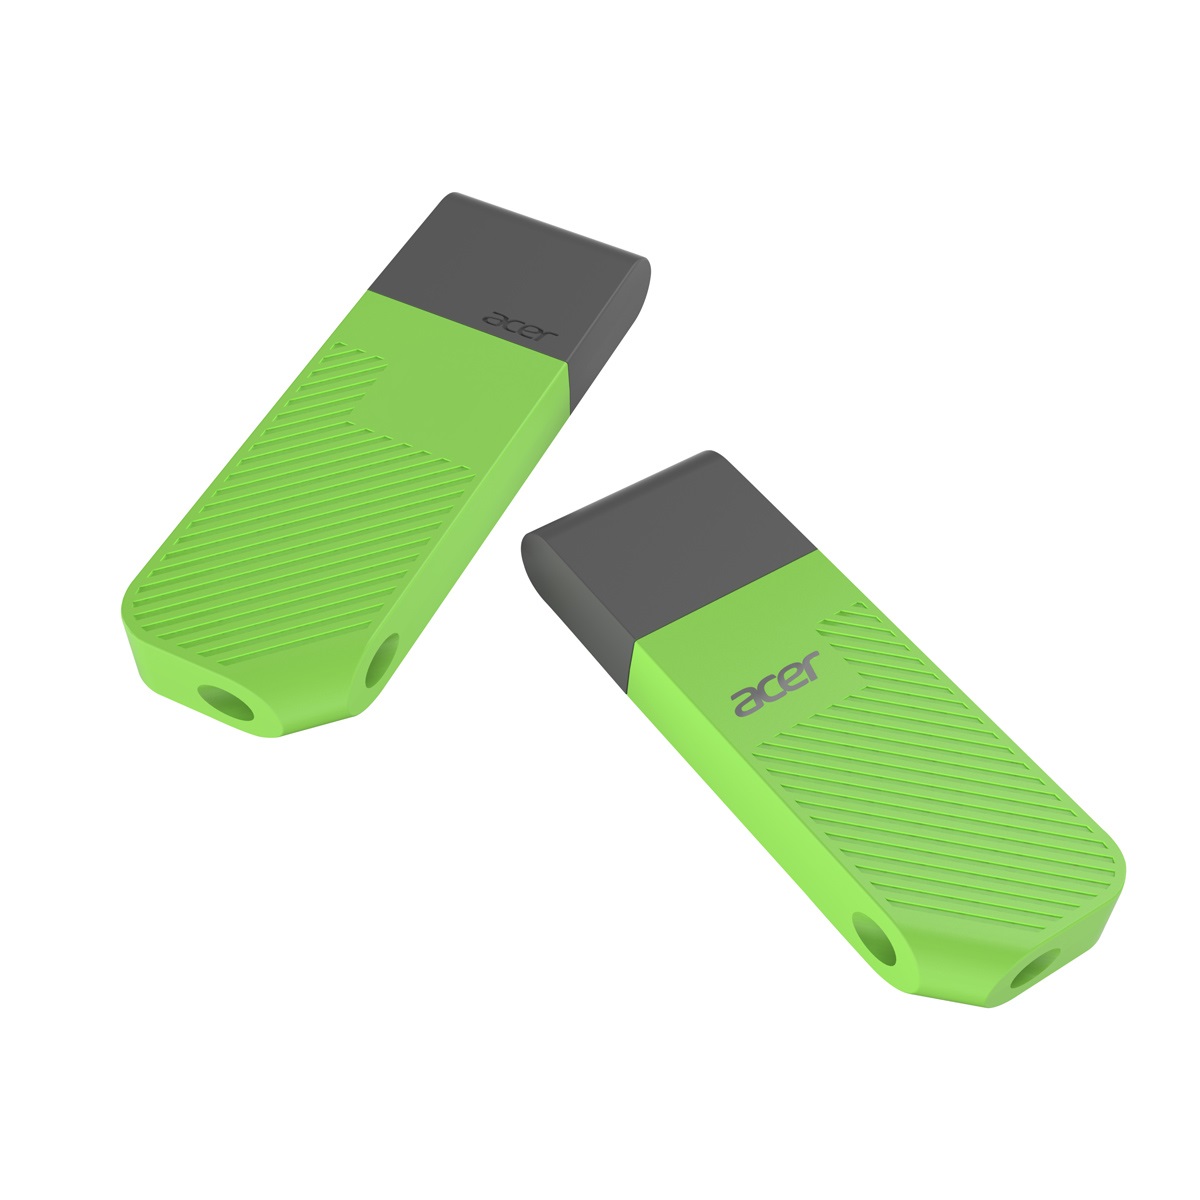 USB ACER UP300 64GB Green (UP300-64GB-GR) USB 3.2 Gen 1